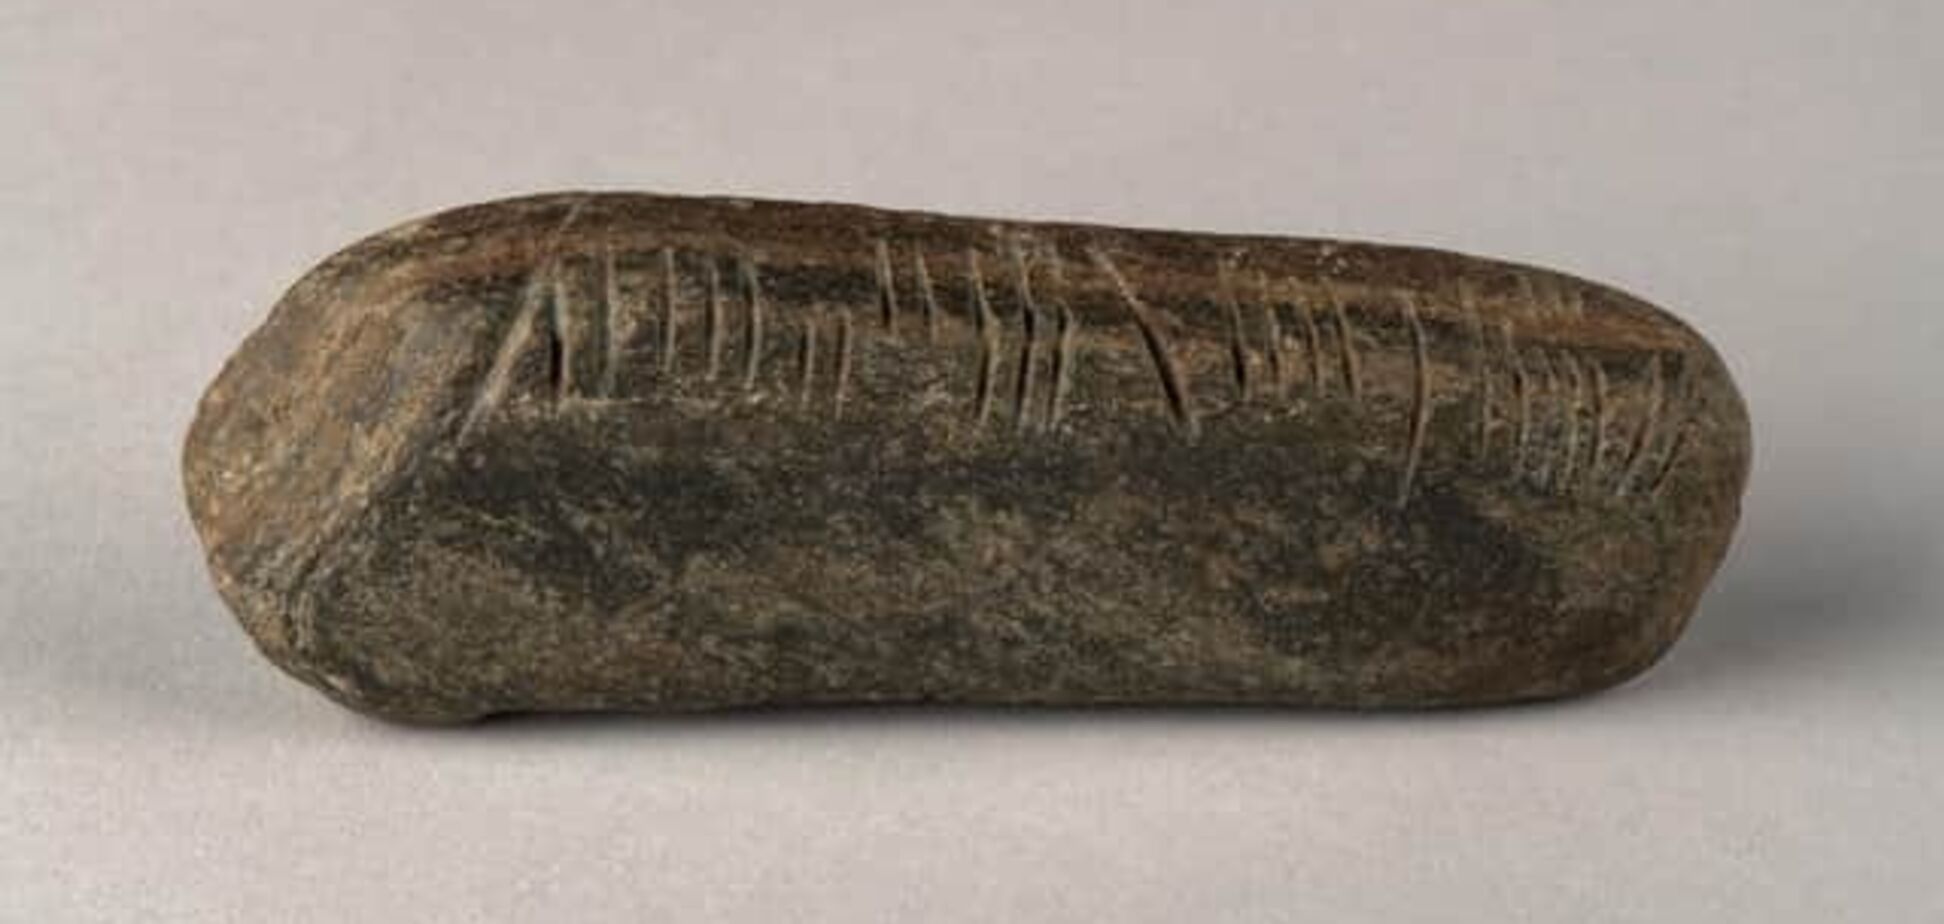 Привіт з IV століття. Вчитель географії знайшов у своєму саду камінь із загадковими позначками